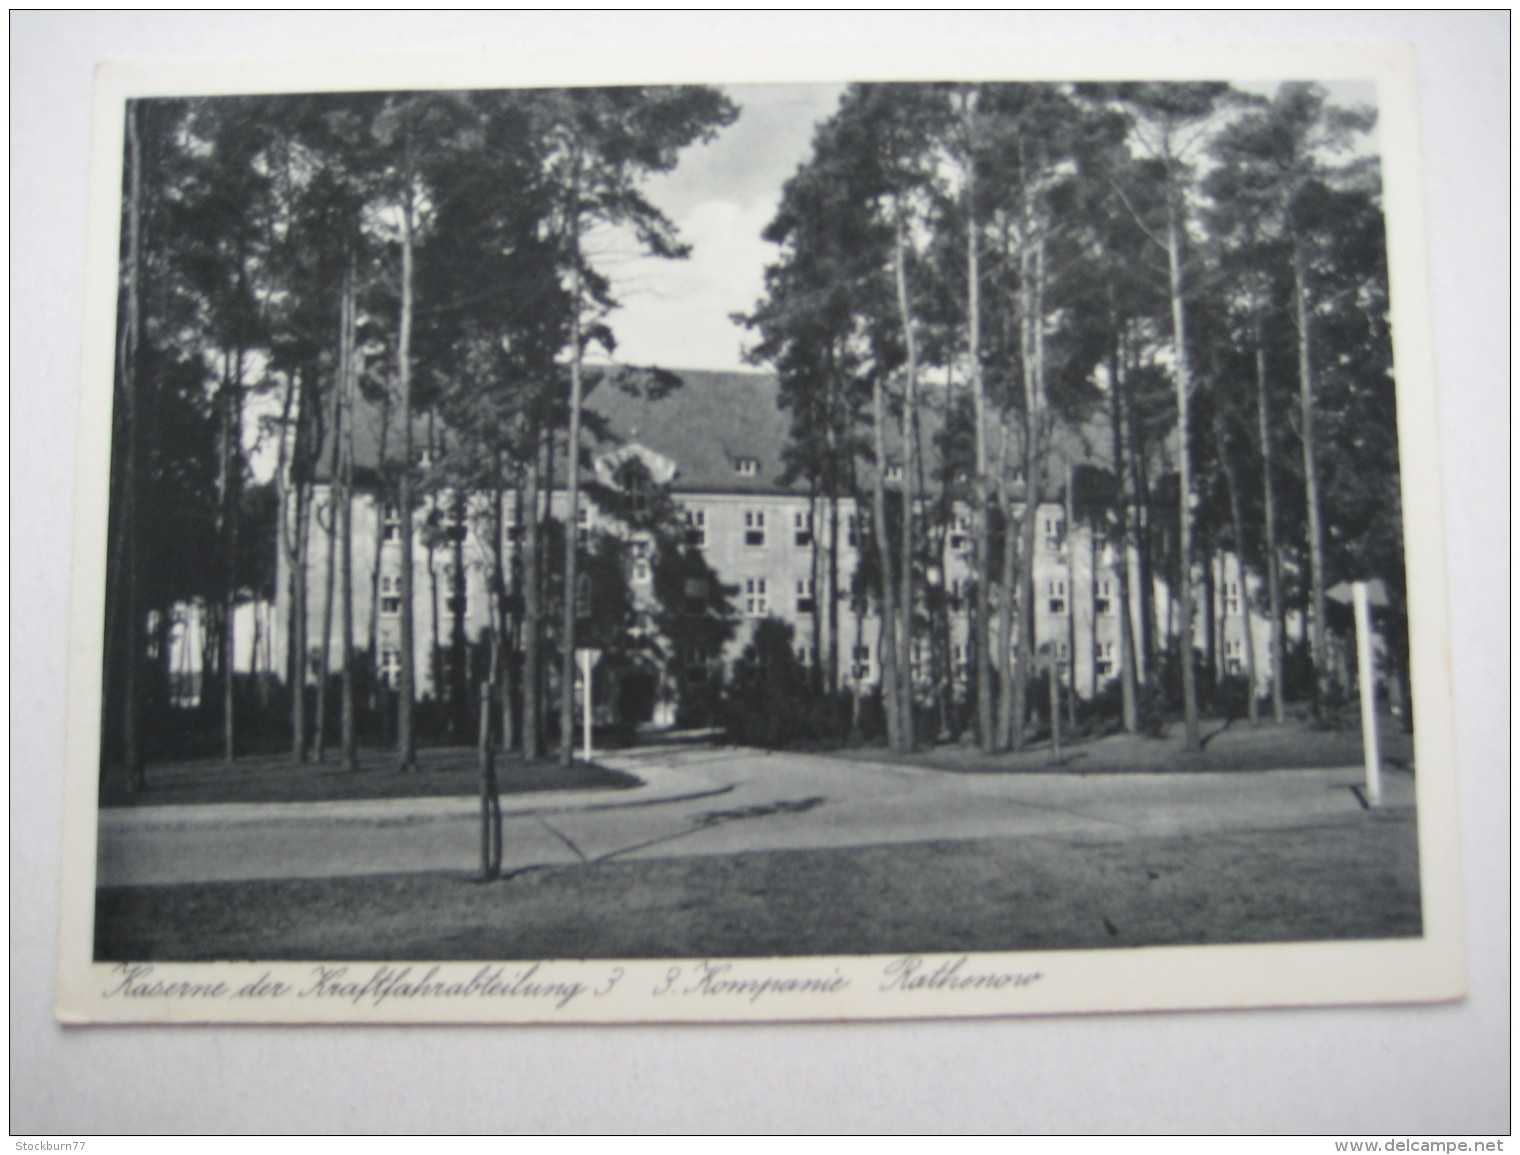 RATHENOW   , Kaserne  , Schöne Karte Um 1937 - Rathenow